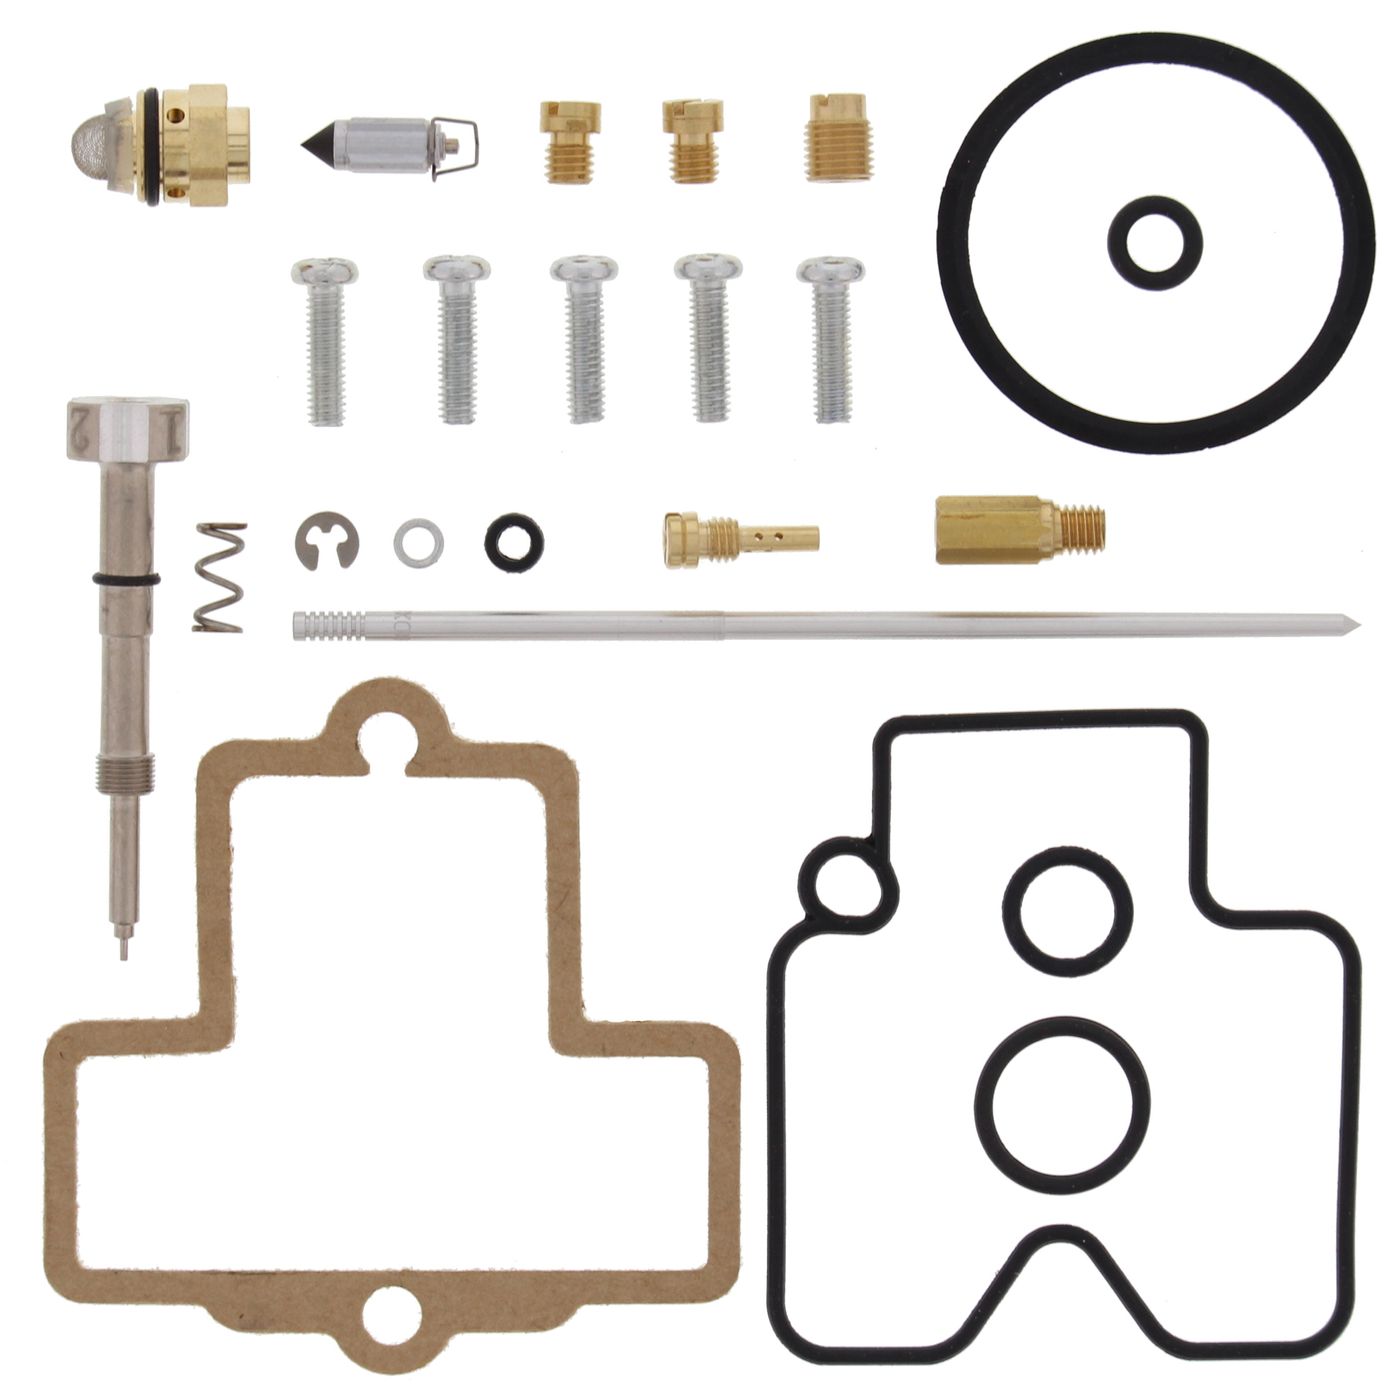 Wrp Carb Repair Kits - WRP261498 image